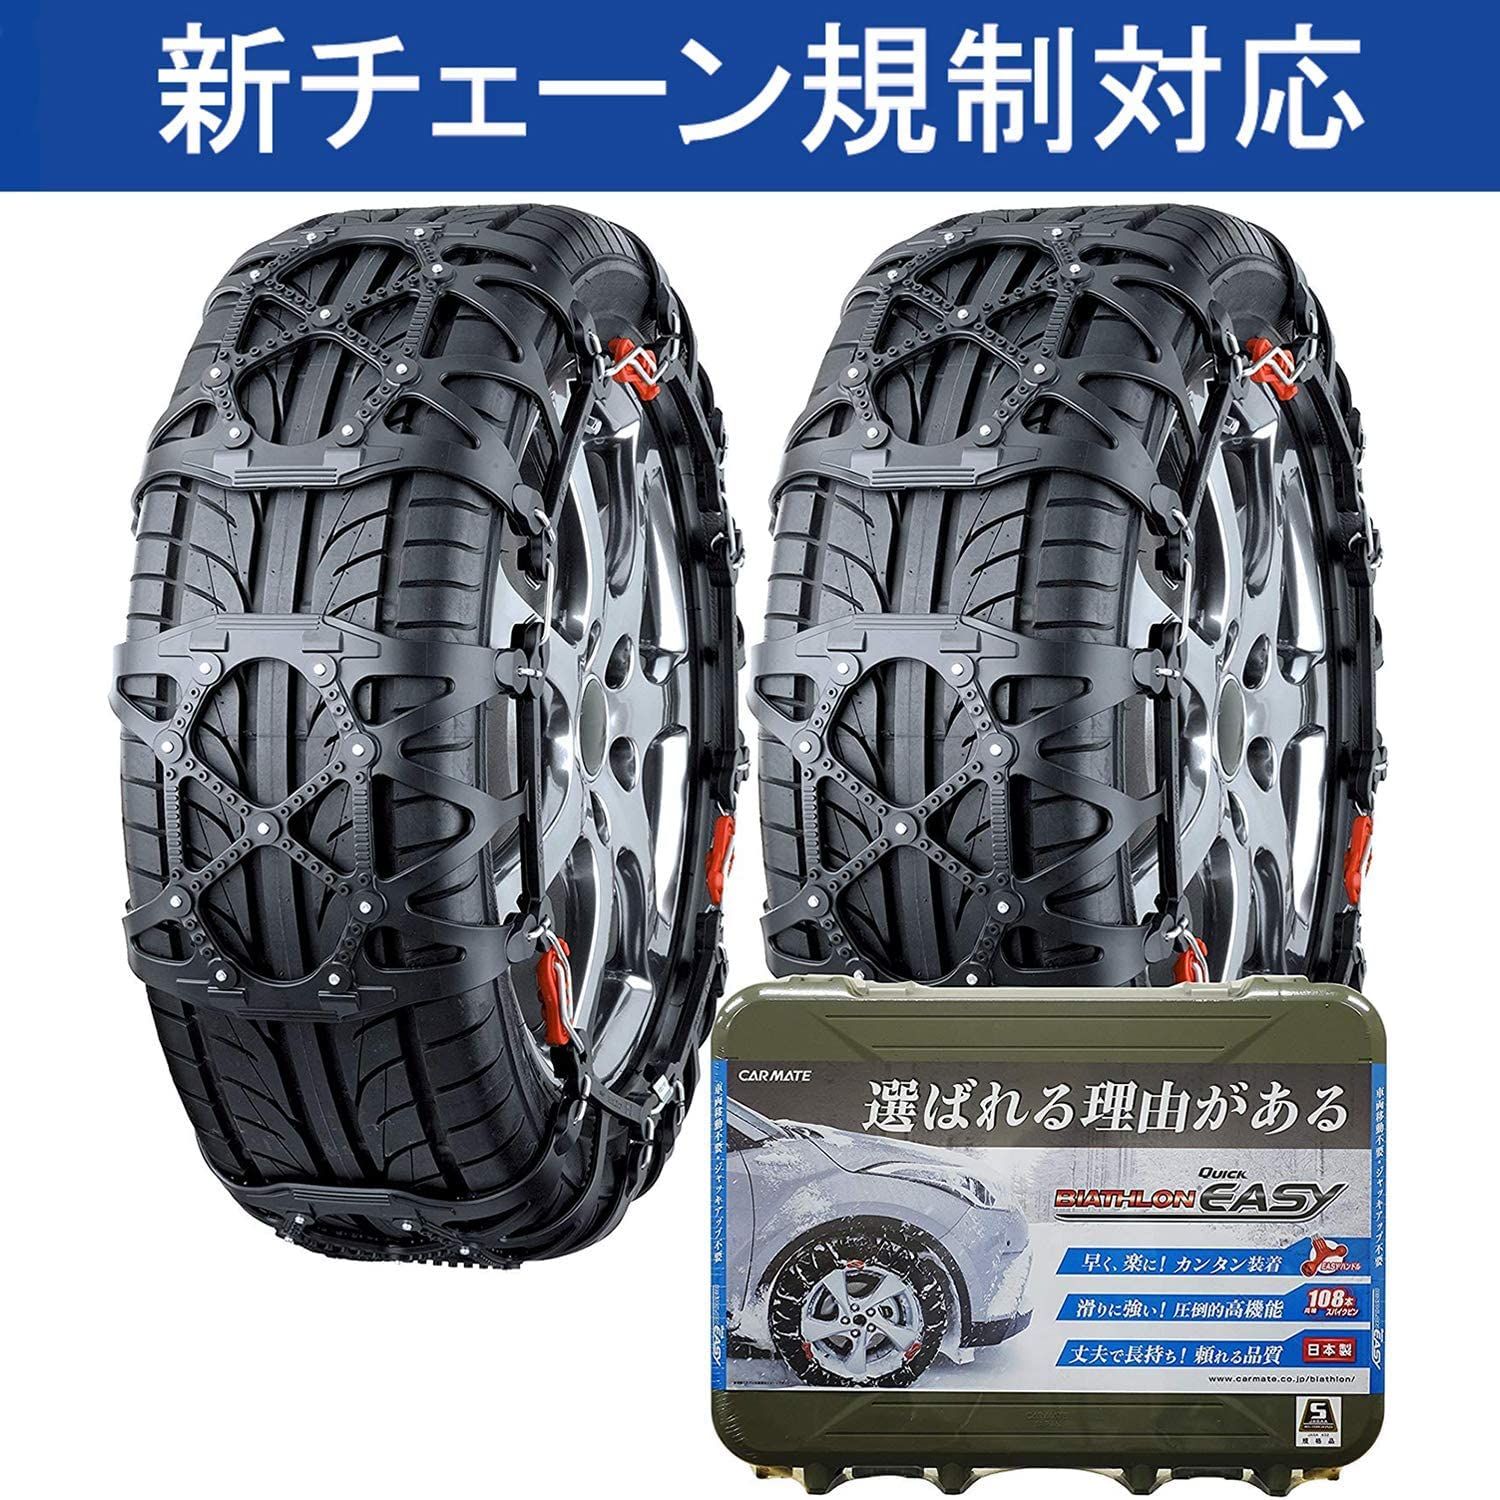 カーメイト 【正規品】 簡単装着 日本製 JASAA認定 非金属 タイヤ 